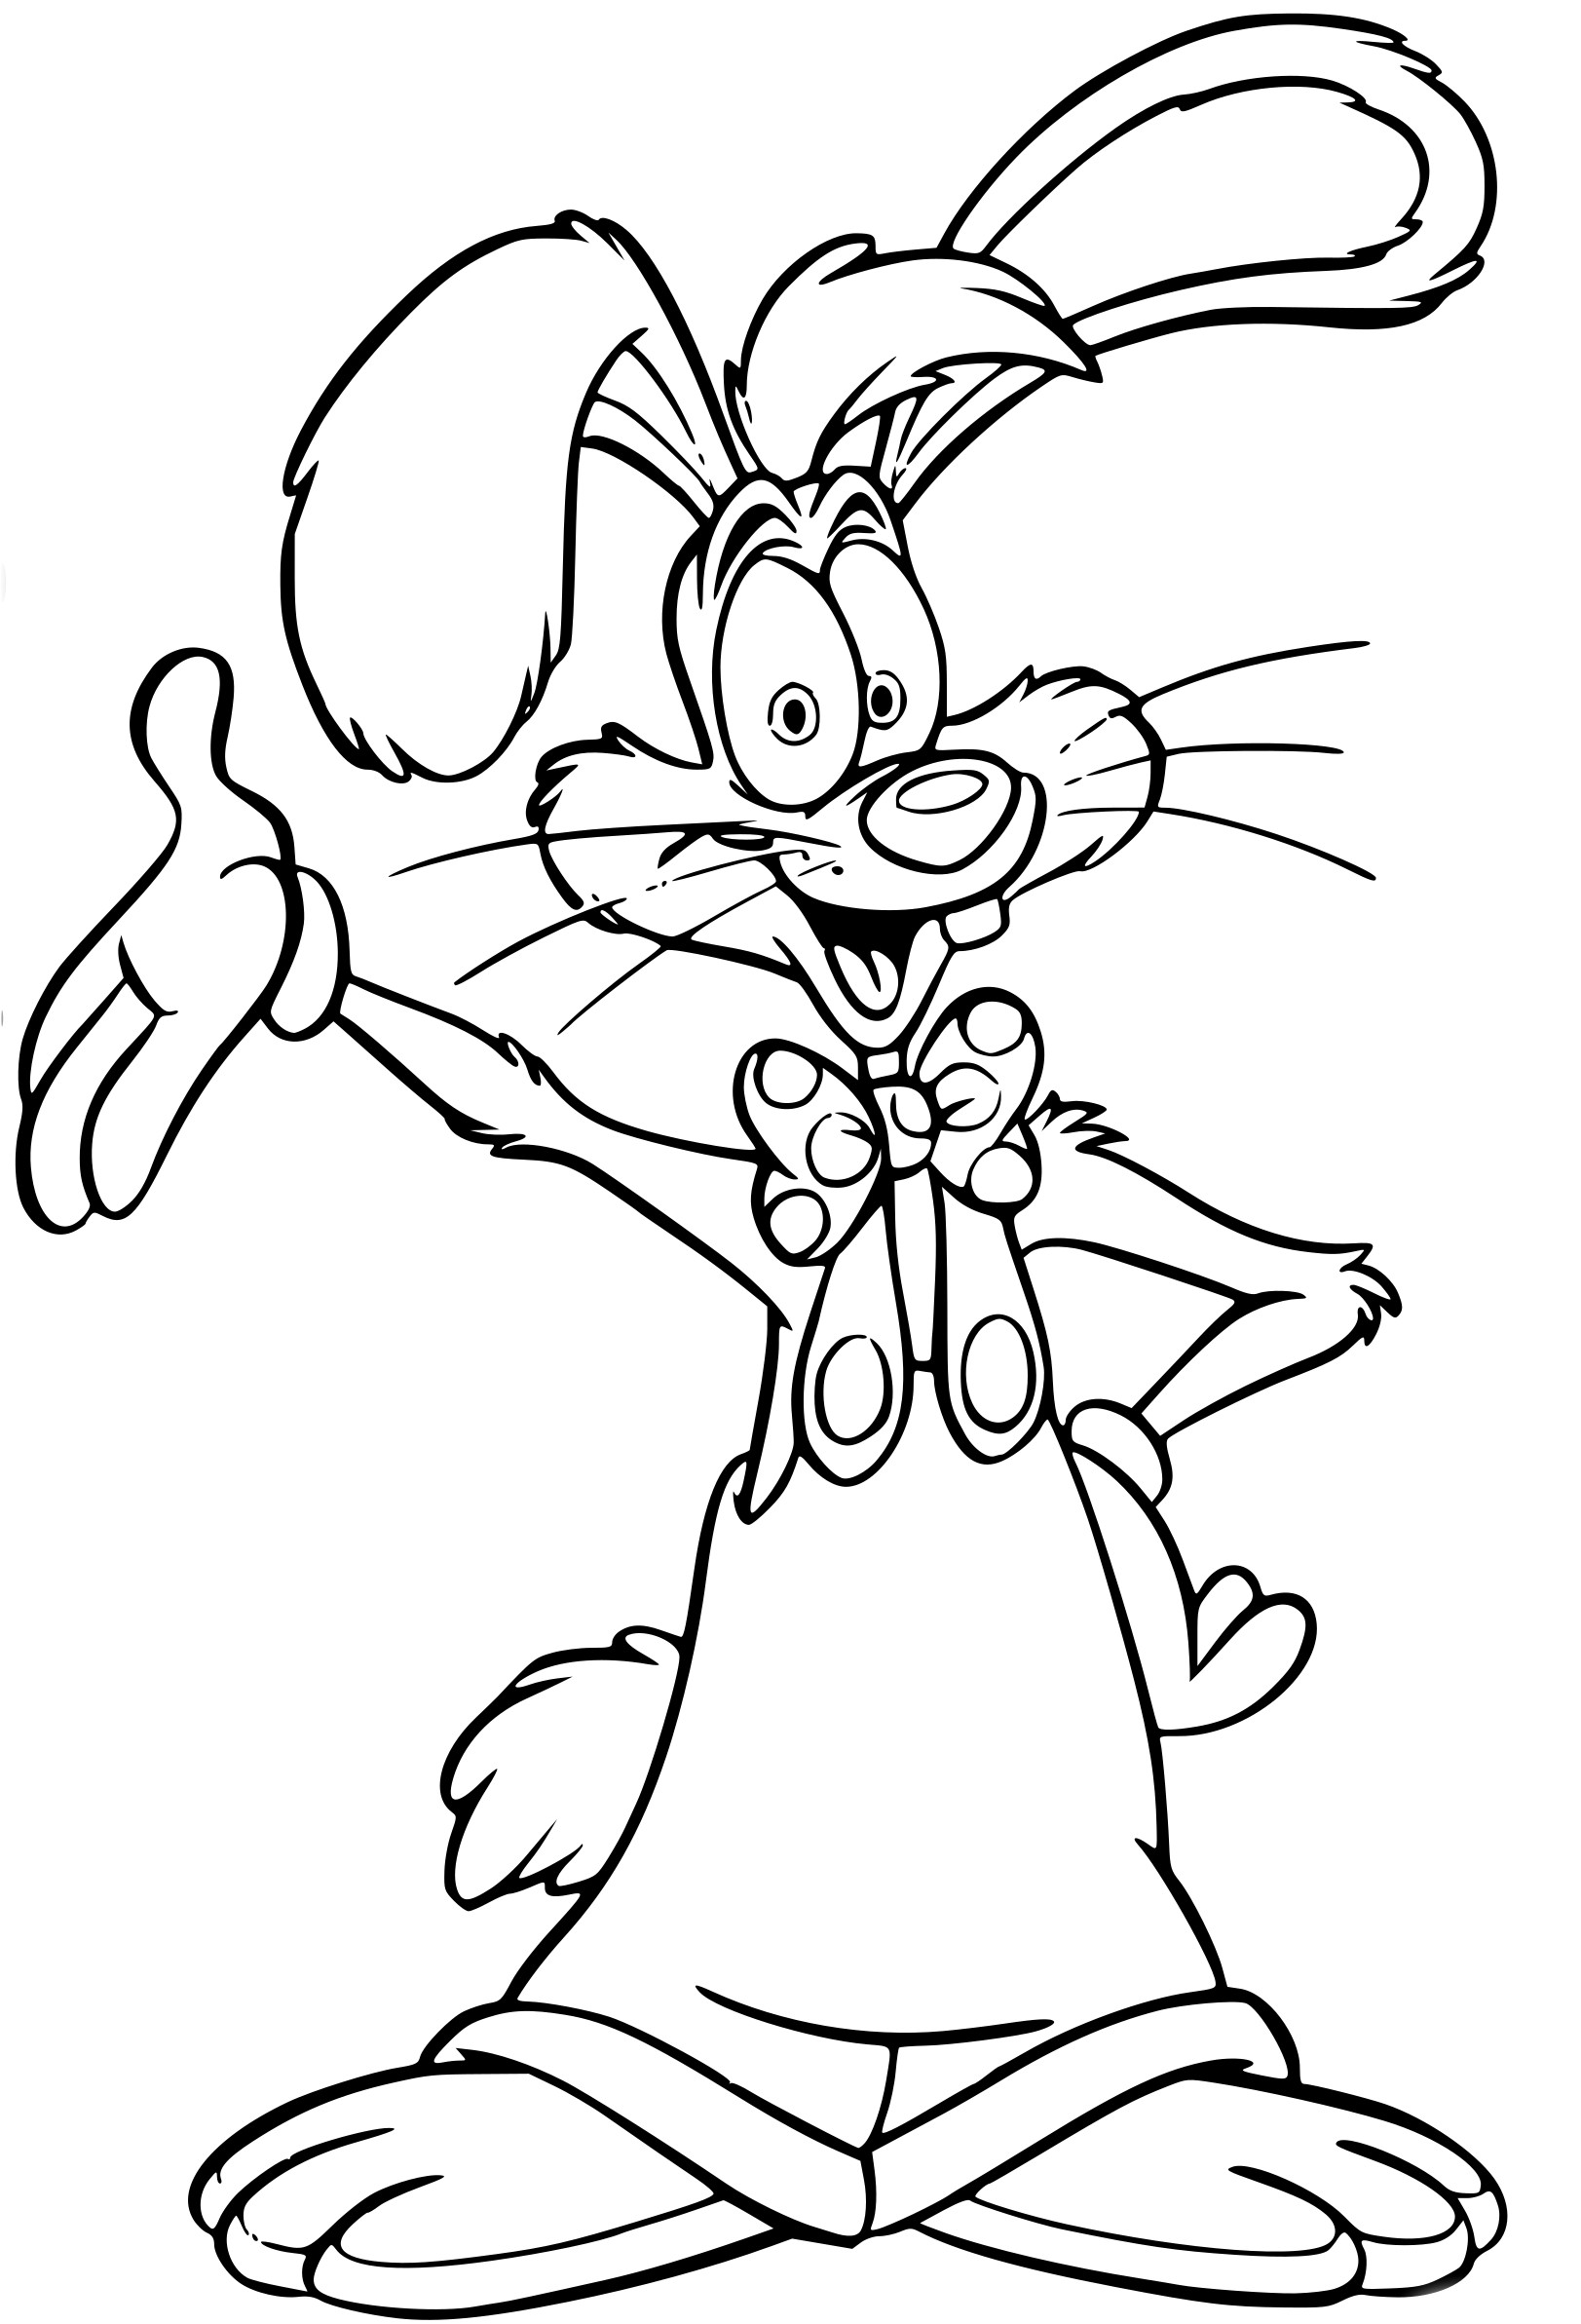 Disegno di Roger Rabbit da colorare